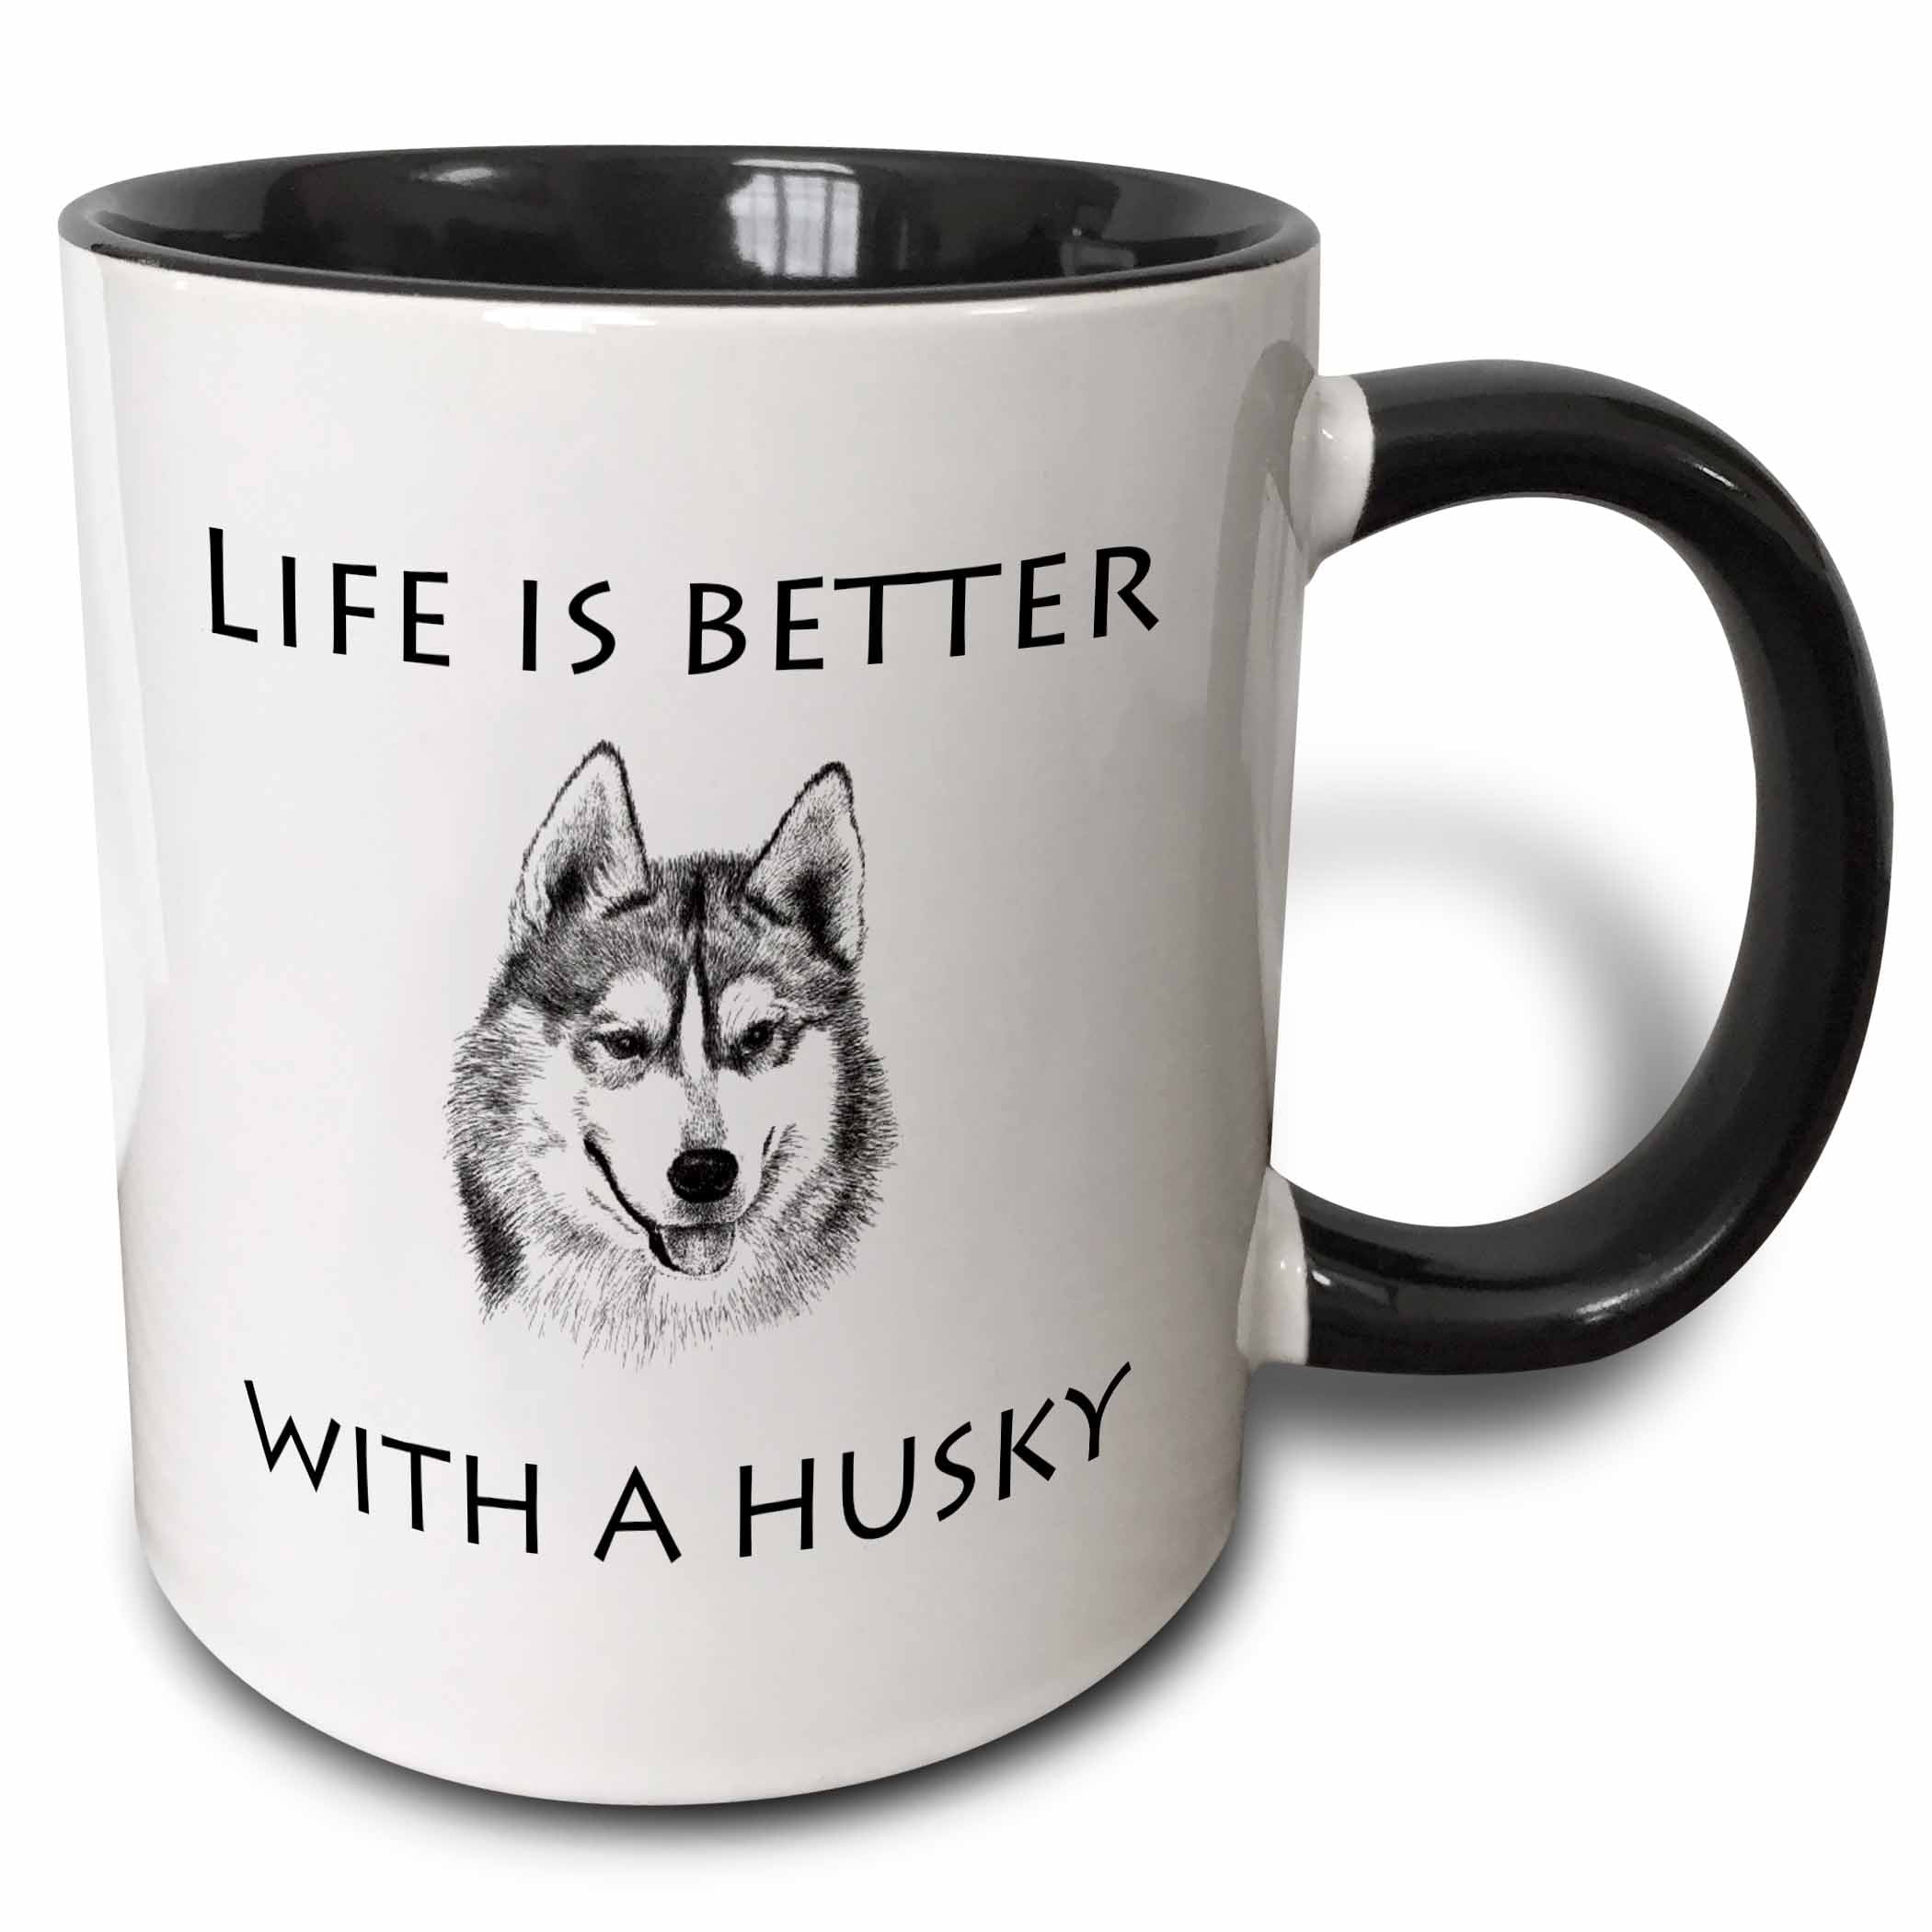 Siberian Husky dog,Chukcha,Chuksha,Cup,Sable Siberian Husky,Huskies,Cup,Gift,Mug 